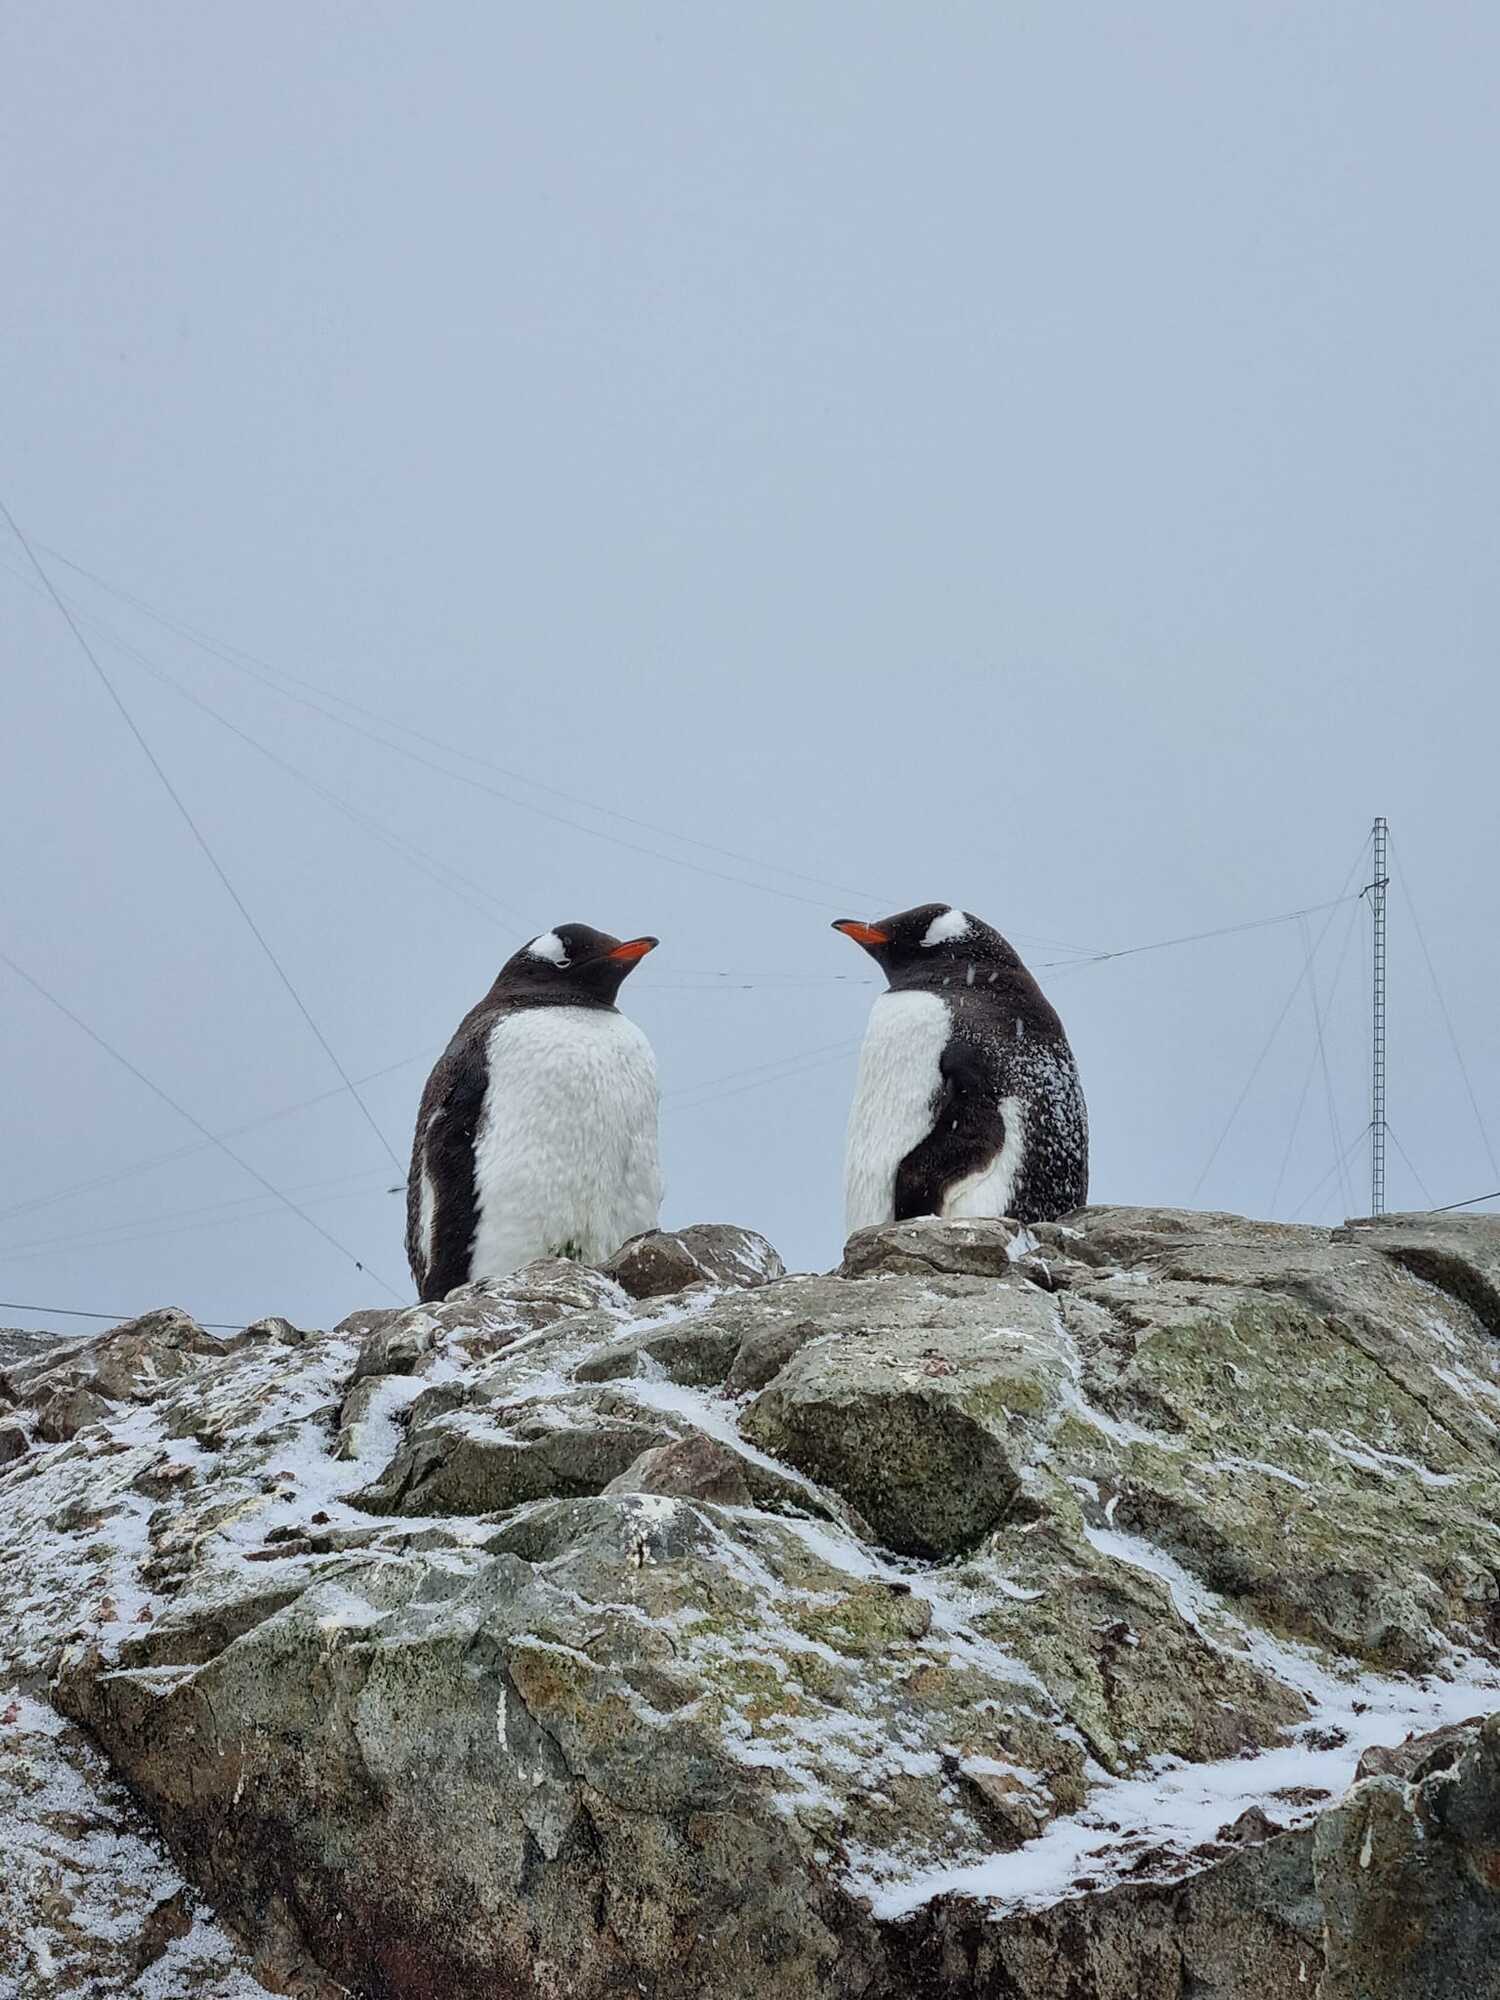 По 500 на каждого исследователя: возле станции "Академик Вернадский" в Антарктиде зафиксировали рекордное количество пингвинов. Фото